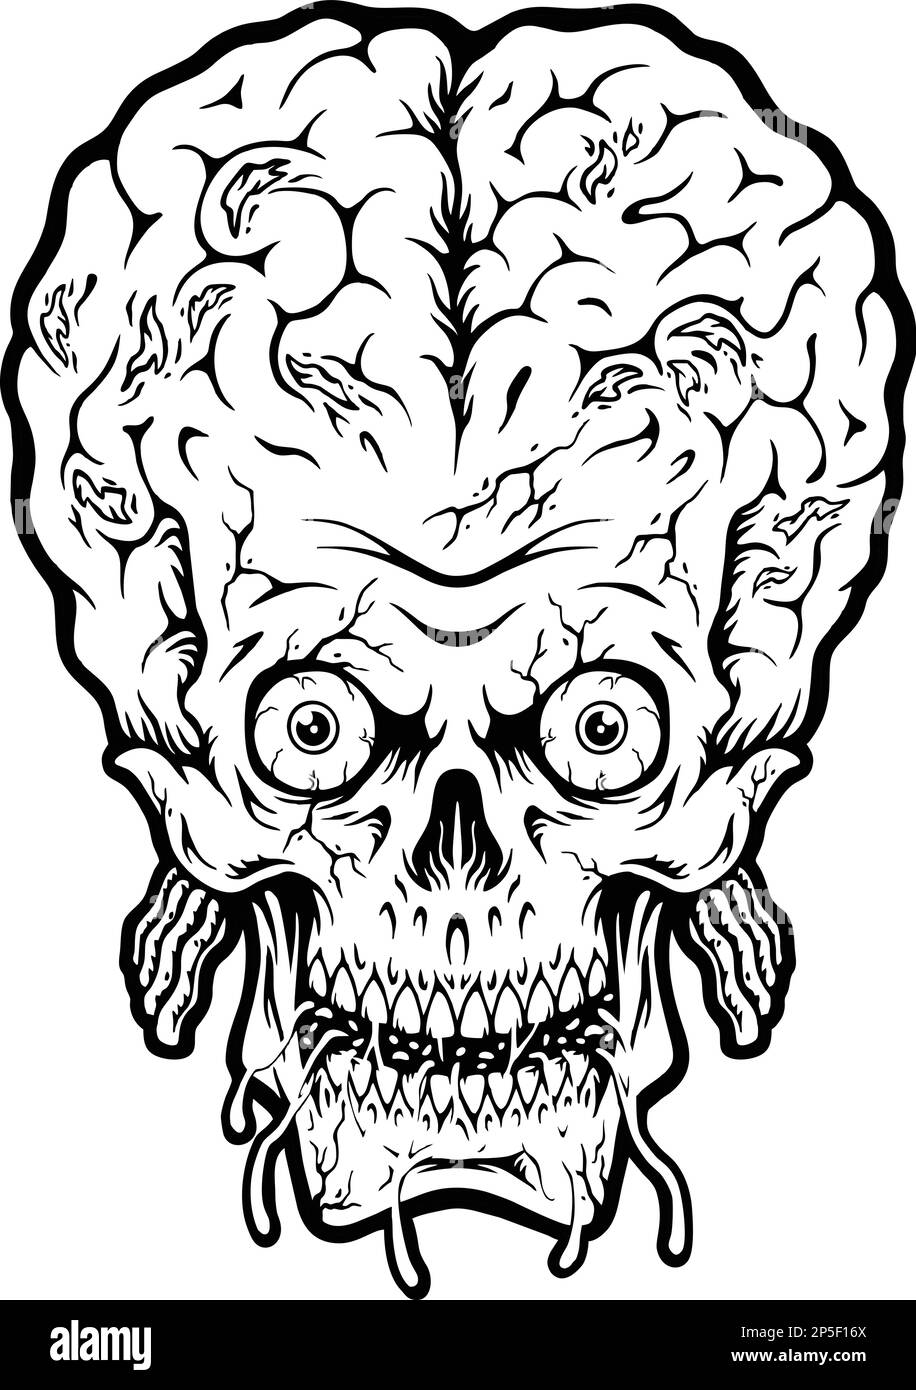 Monster zombie head skull brain black and white vector